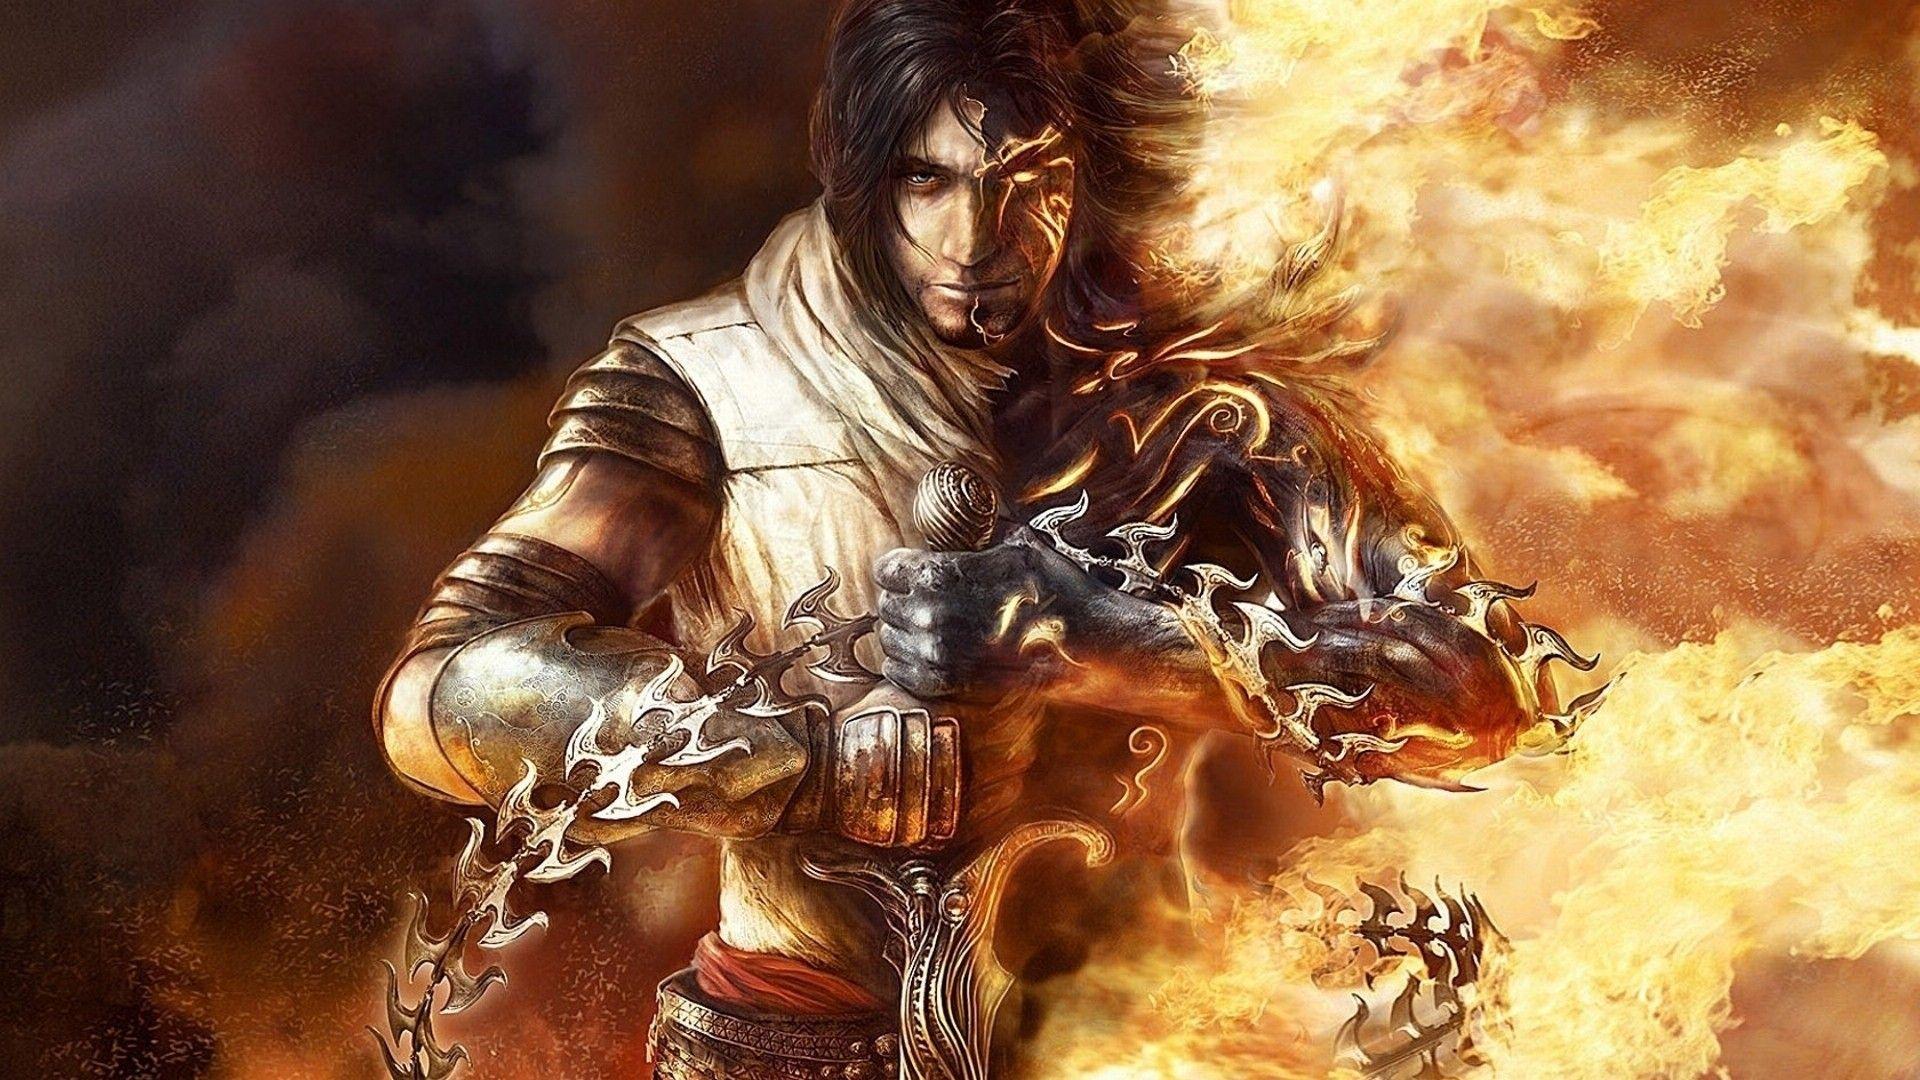 sword, fantasy art, Prince of Persia, men, video games, heroes